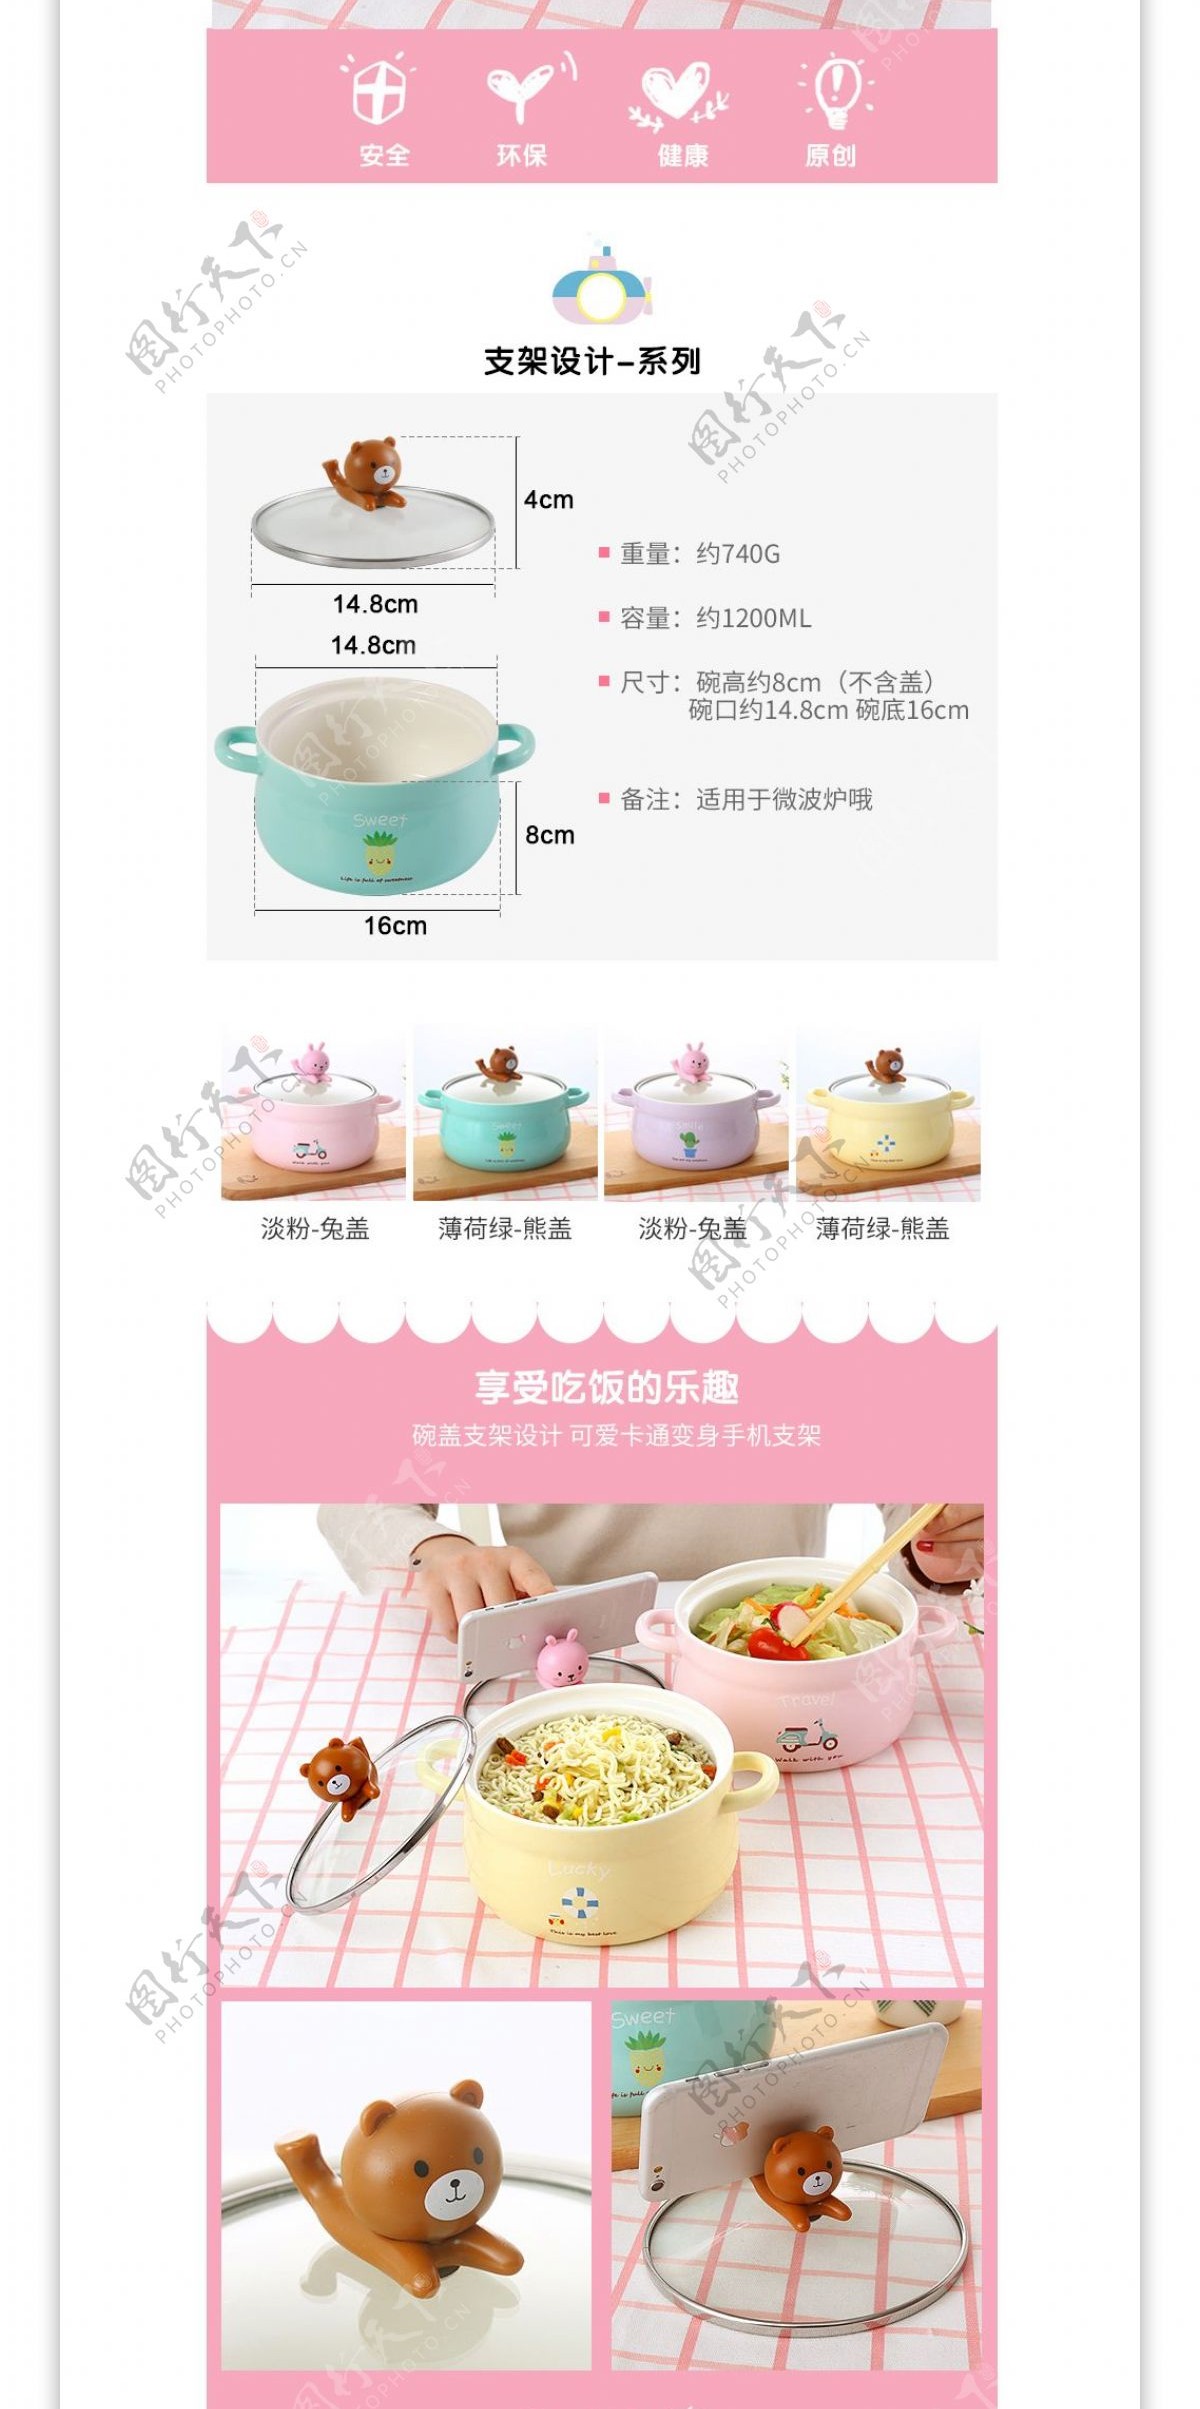 淘宝天猫粉色可爱泡面碗餐具详情页模板